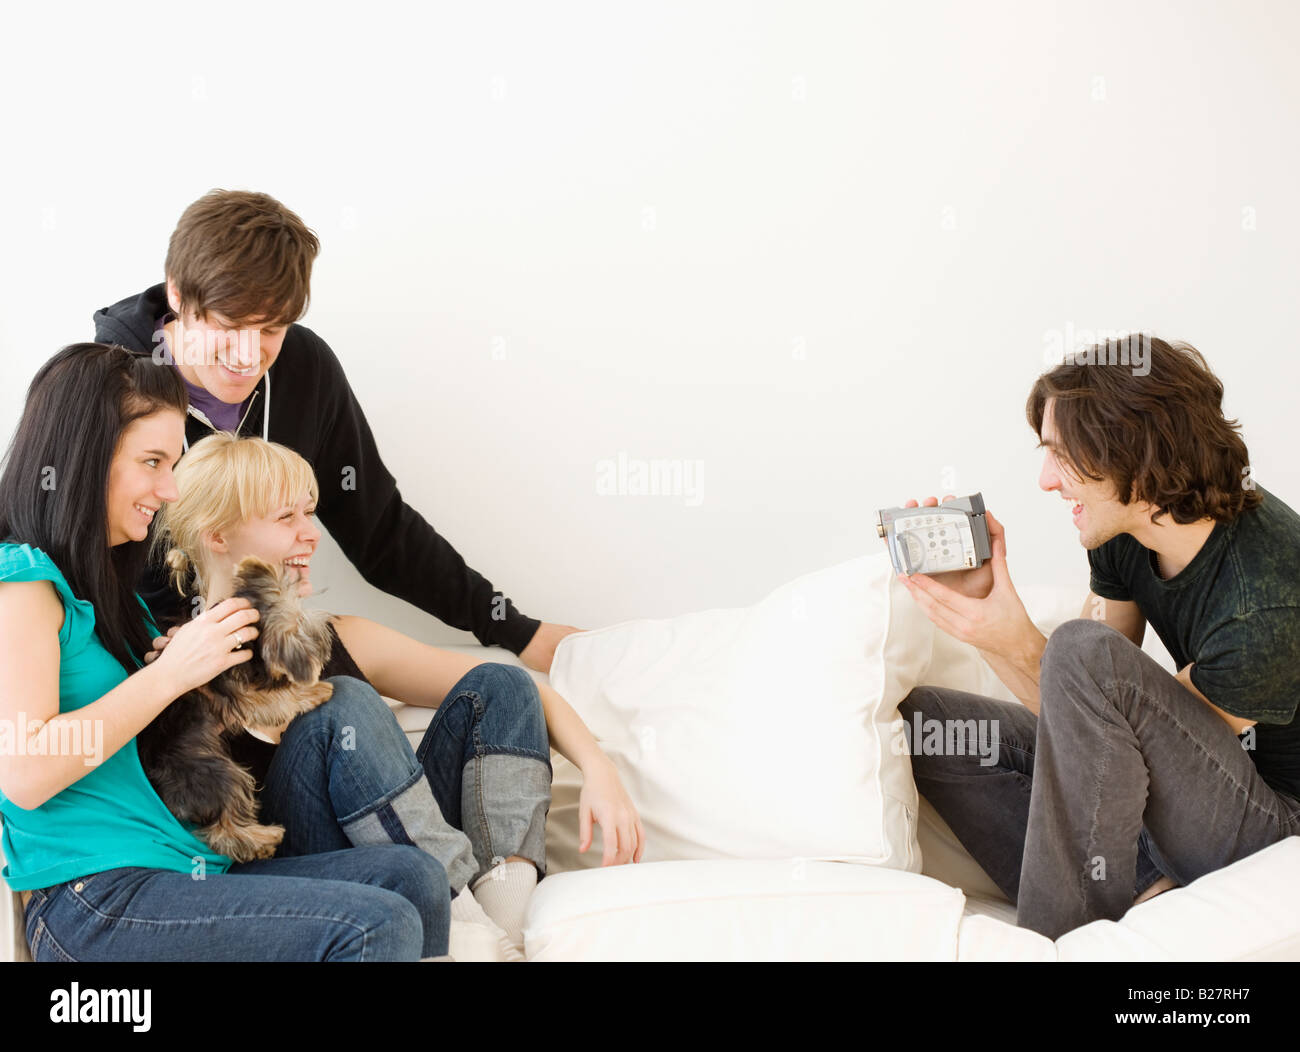 Freunde des Menschen Videoaufzeichnung auf sofa Stockfoto